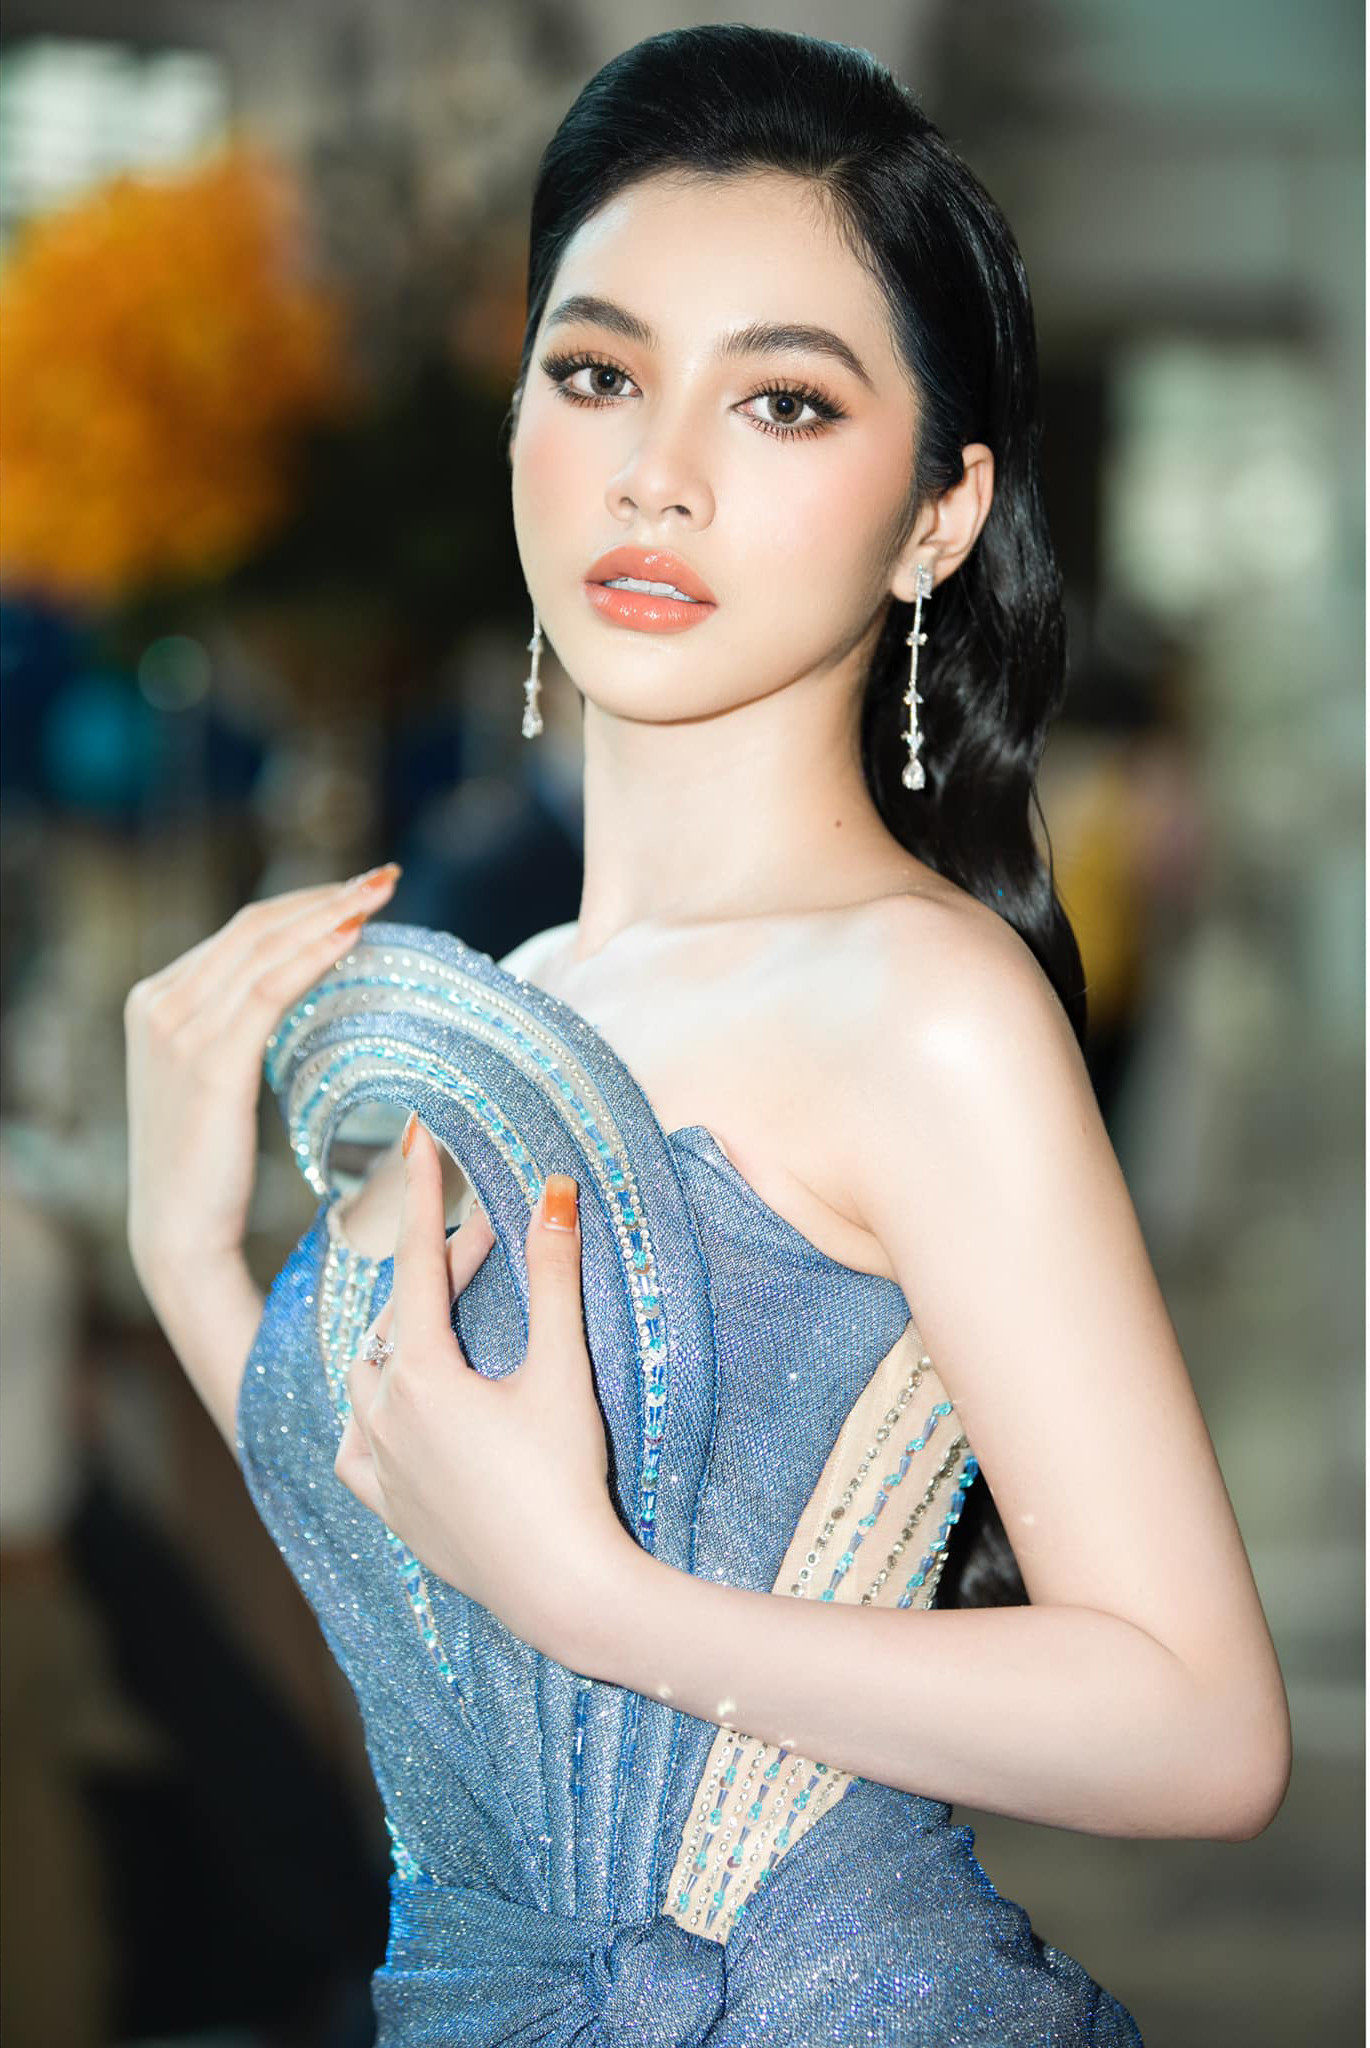 Người đẹp quê An Giang, từng lọt vào top 15 Hoa hậu Việt Nam 2020.